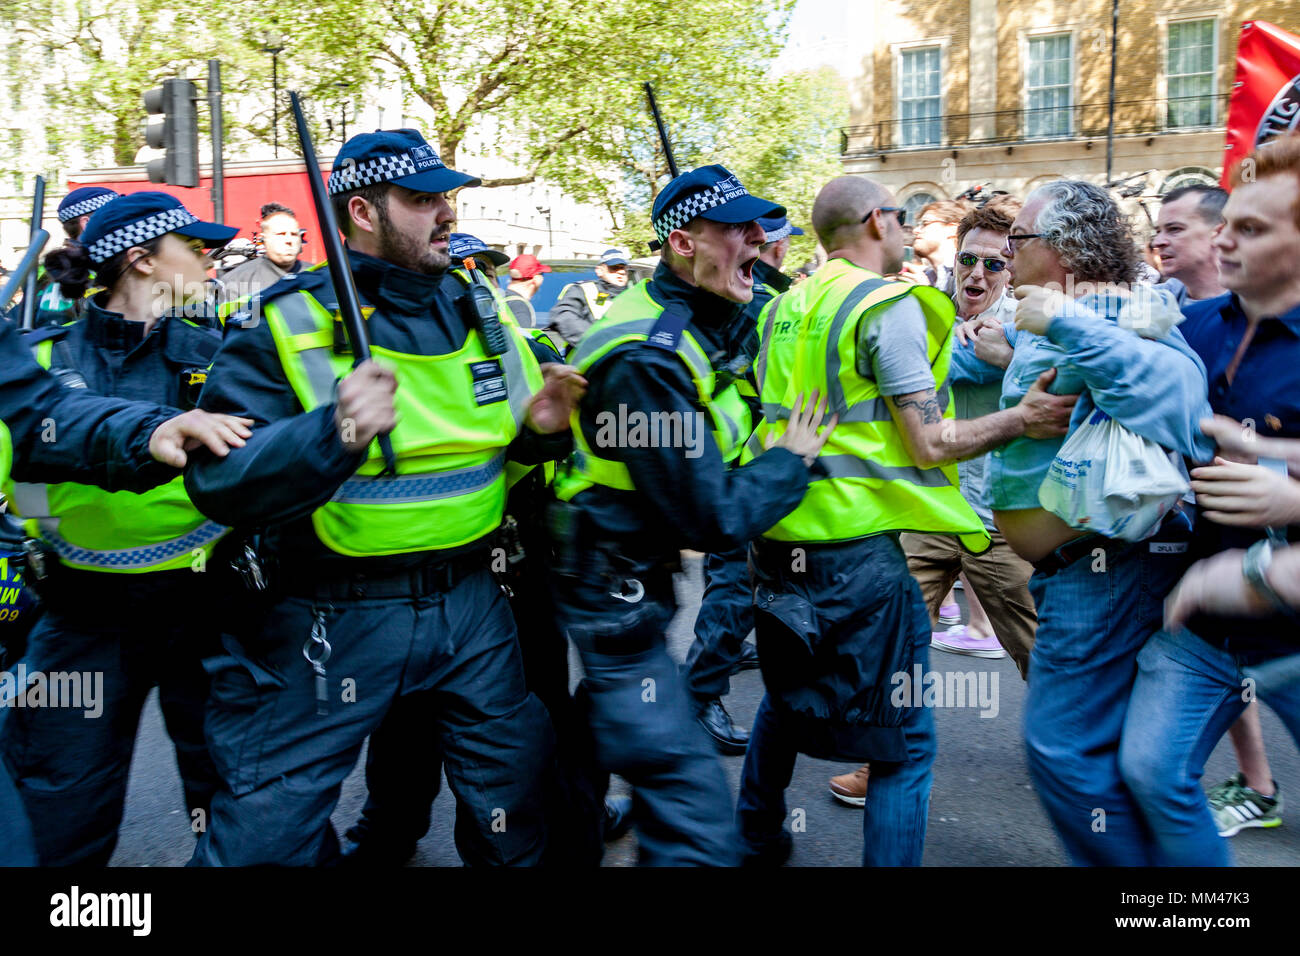 Polizia britannica confrontarsi con i dimostranti ad una libertà di parola rally organizzato dall'ala destra attivista Tommy Robinson, London, Regno Unito Foto Stock